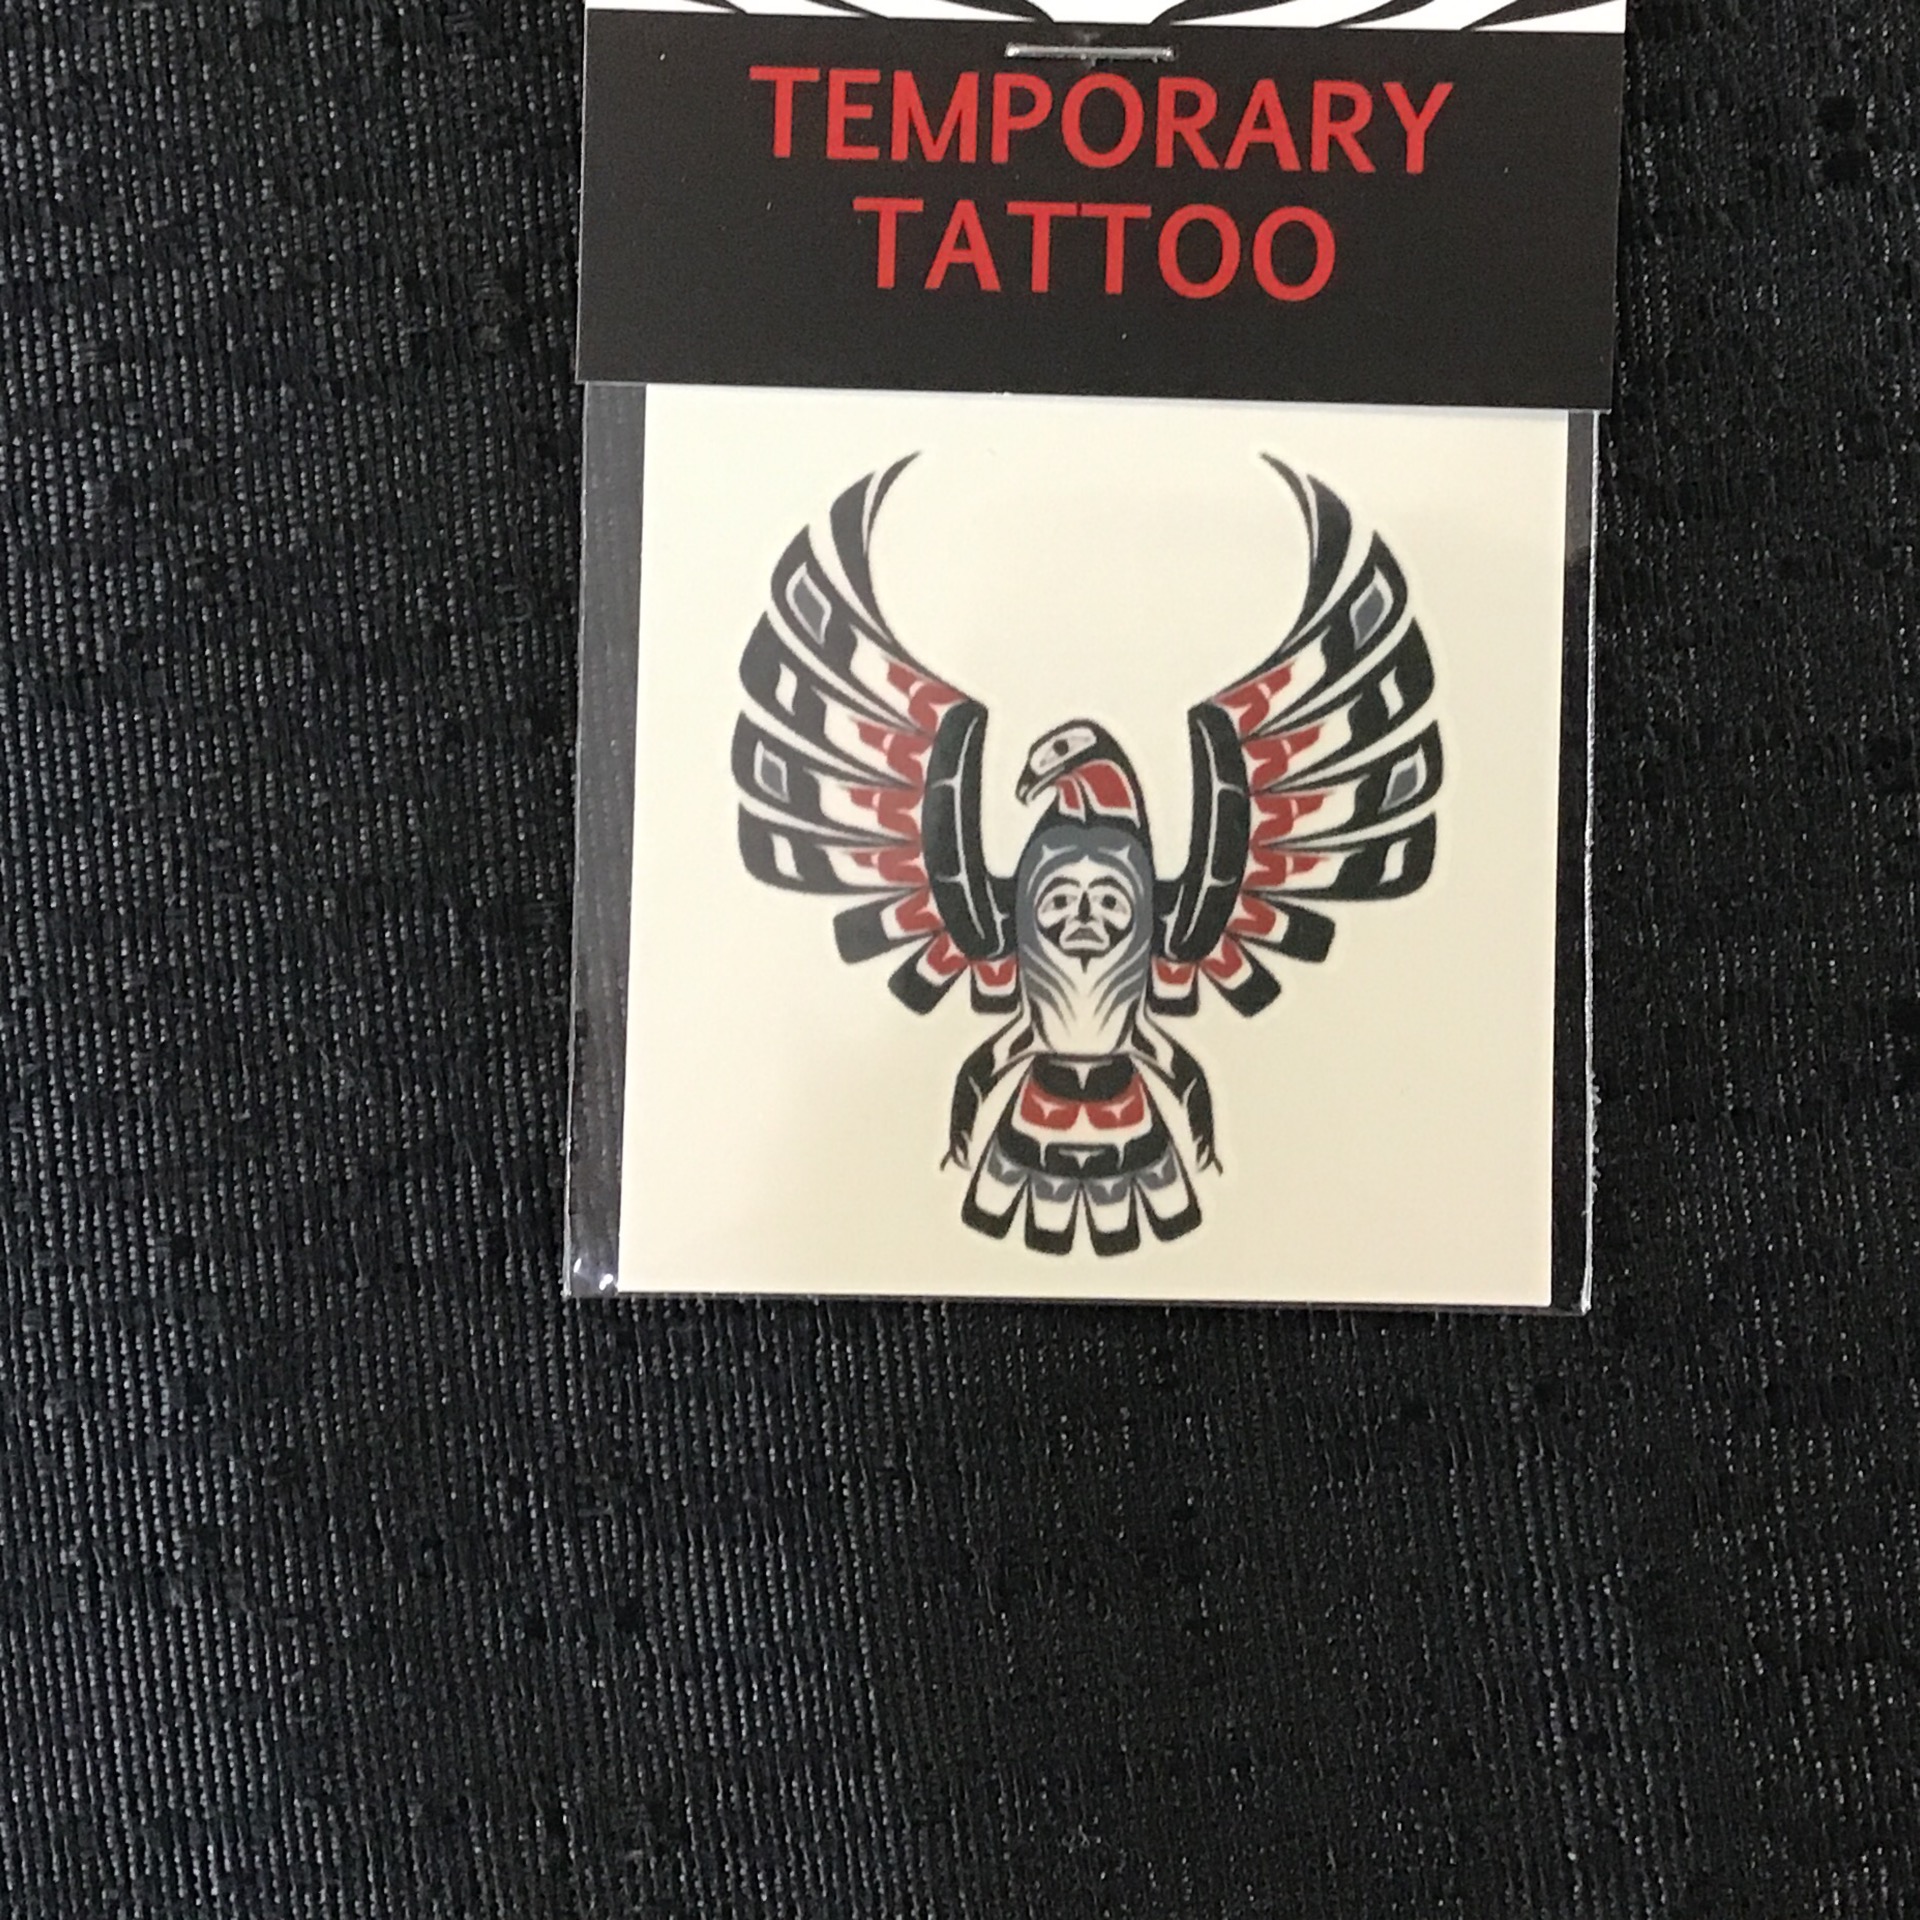 Tattoo Eagle